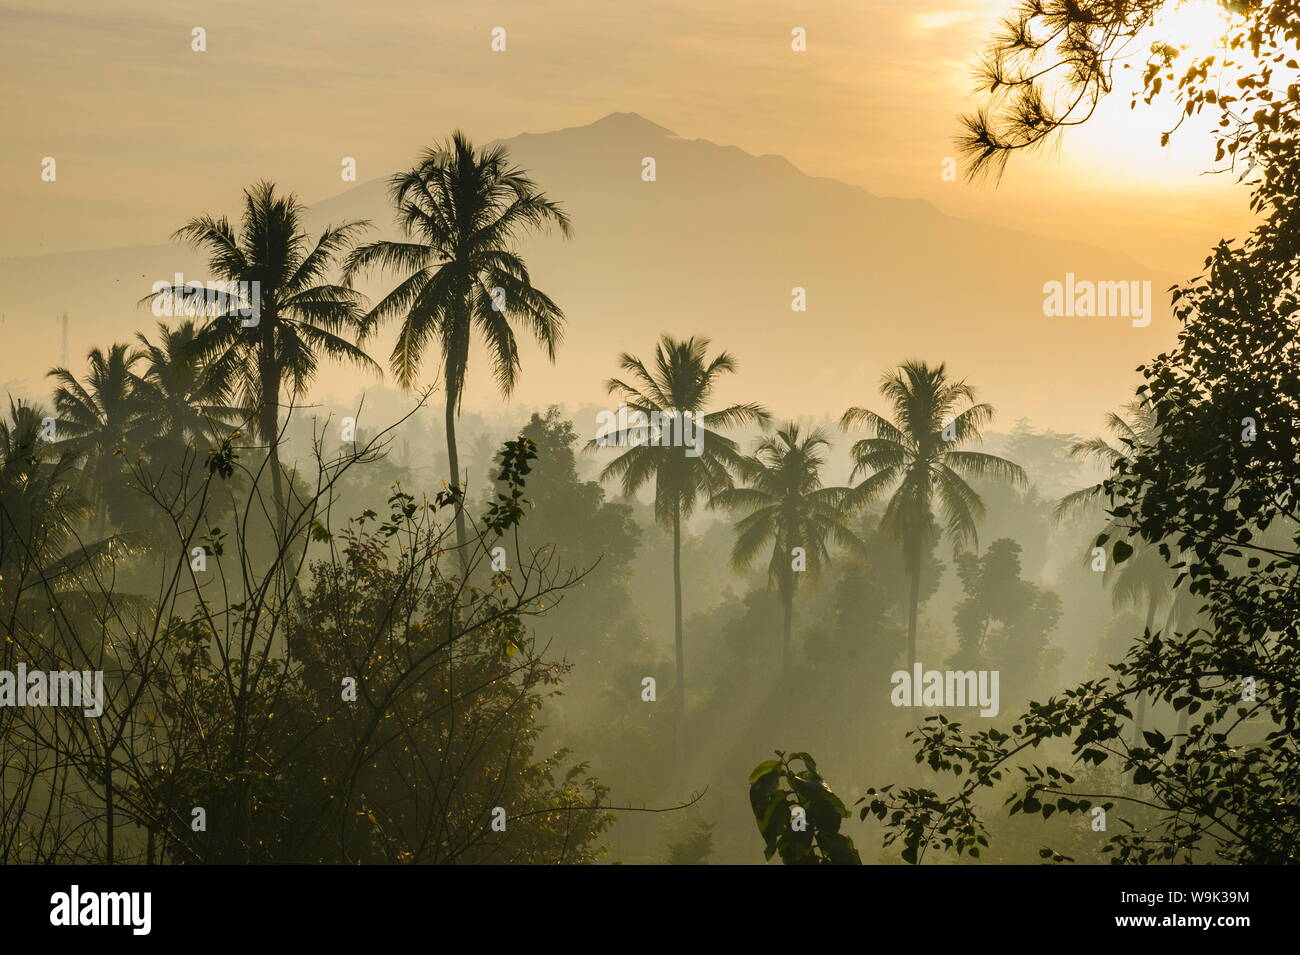 Am frühen Morgen Blick auf die Landschaft rund um den Tempel Komplex von Borobodur, Weltkulturerbe der UNESCO, Java, Indonesien, Südostasien, Asien Stockfoto